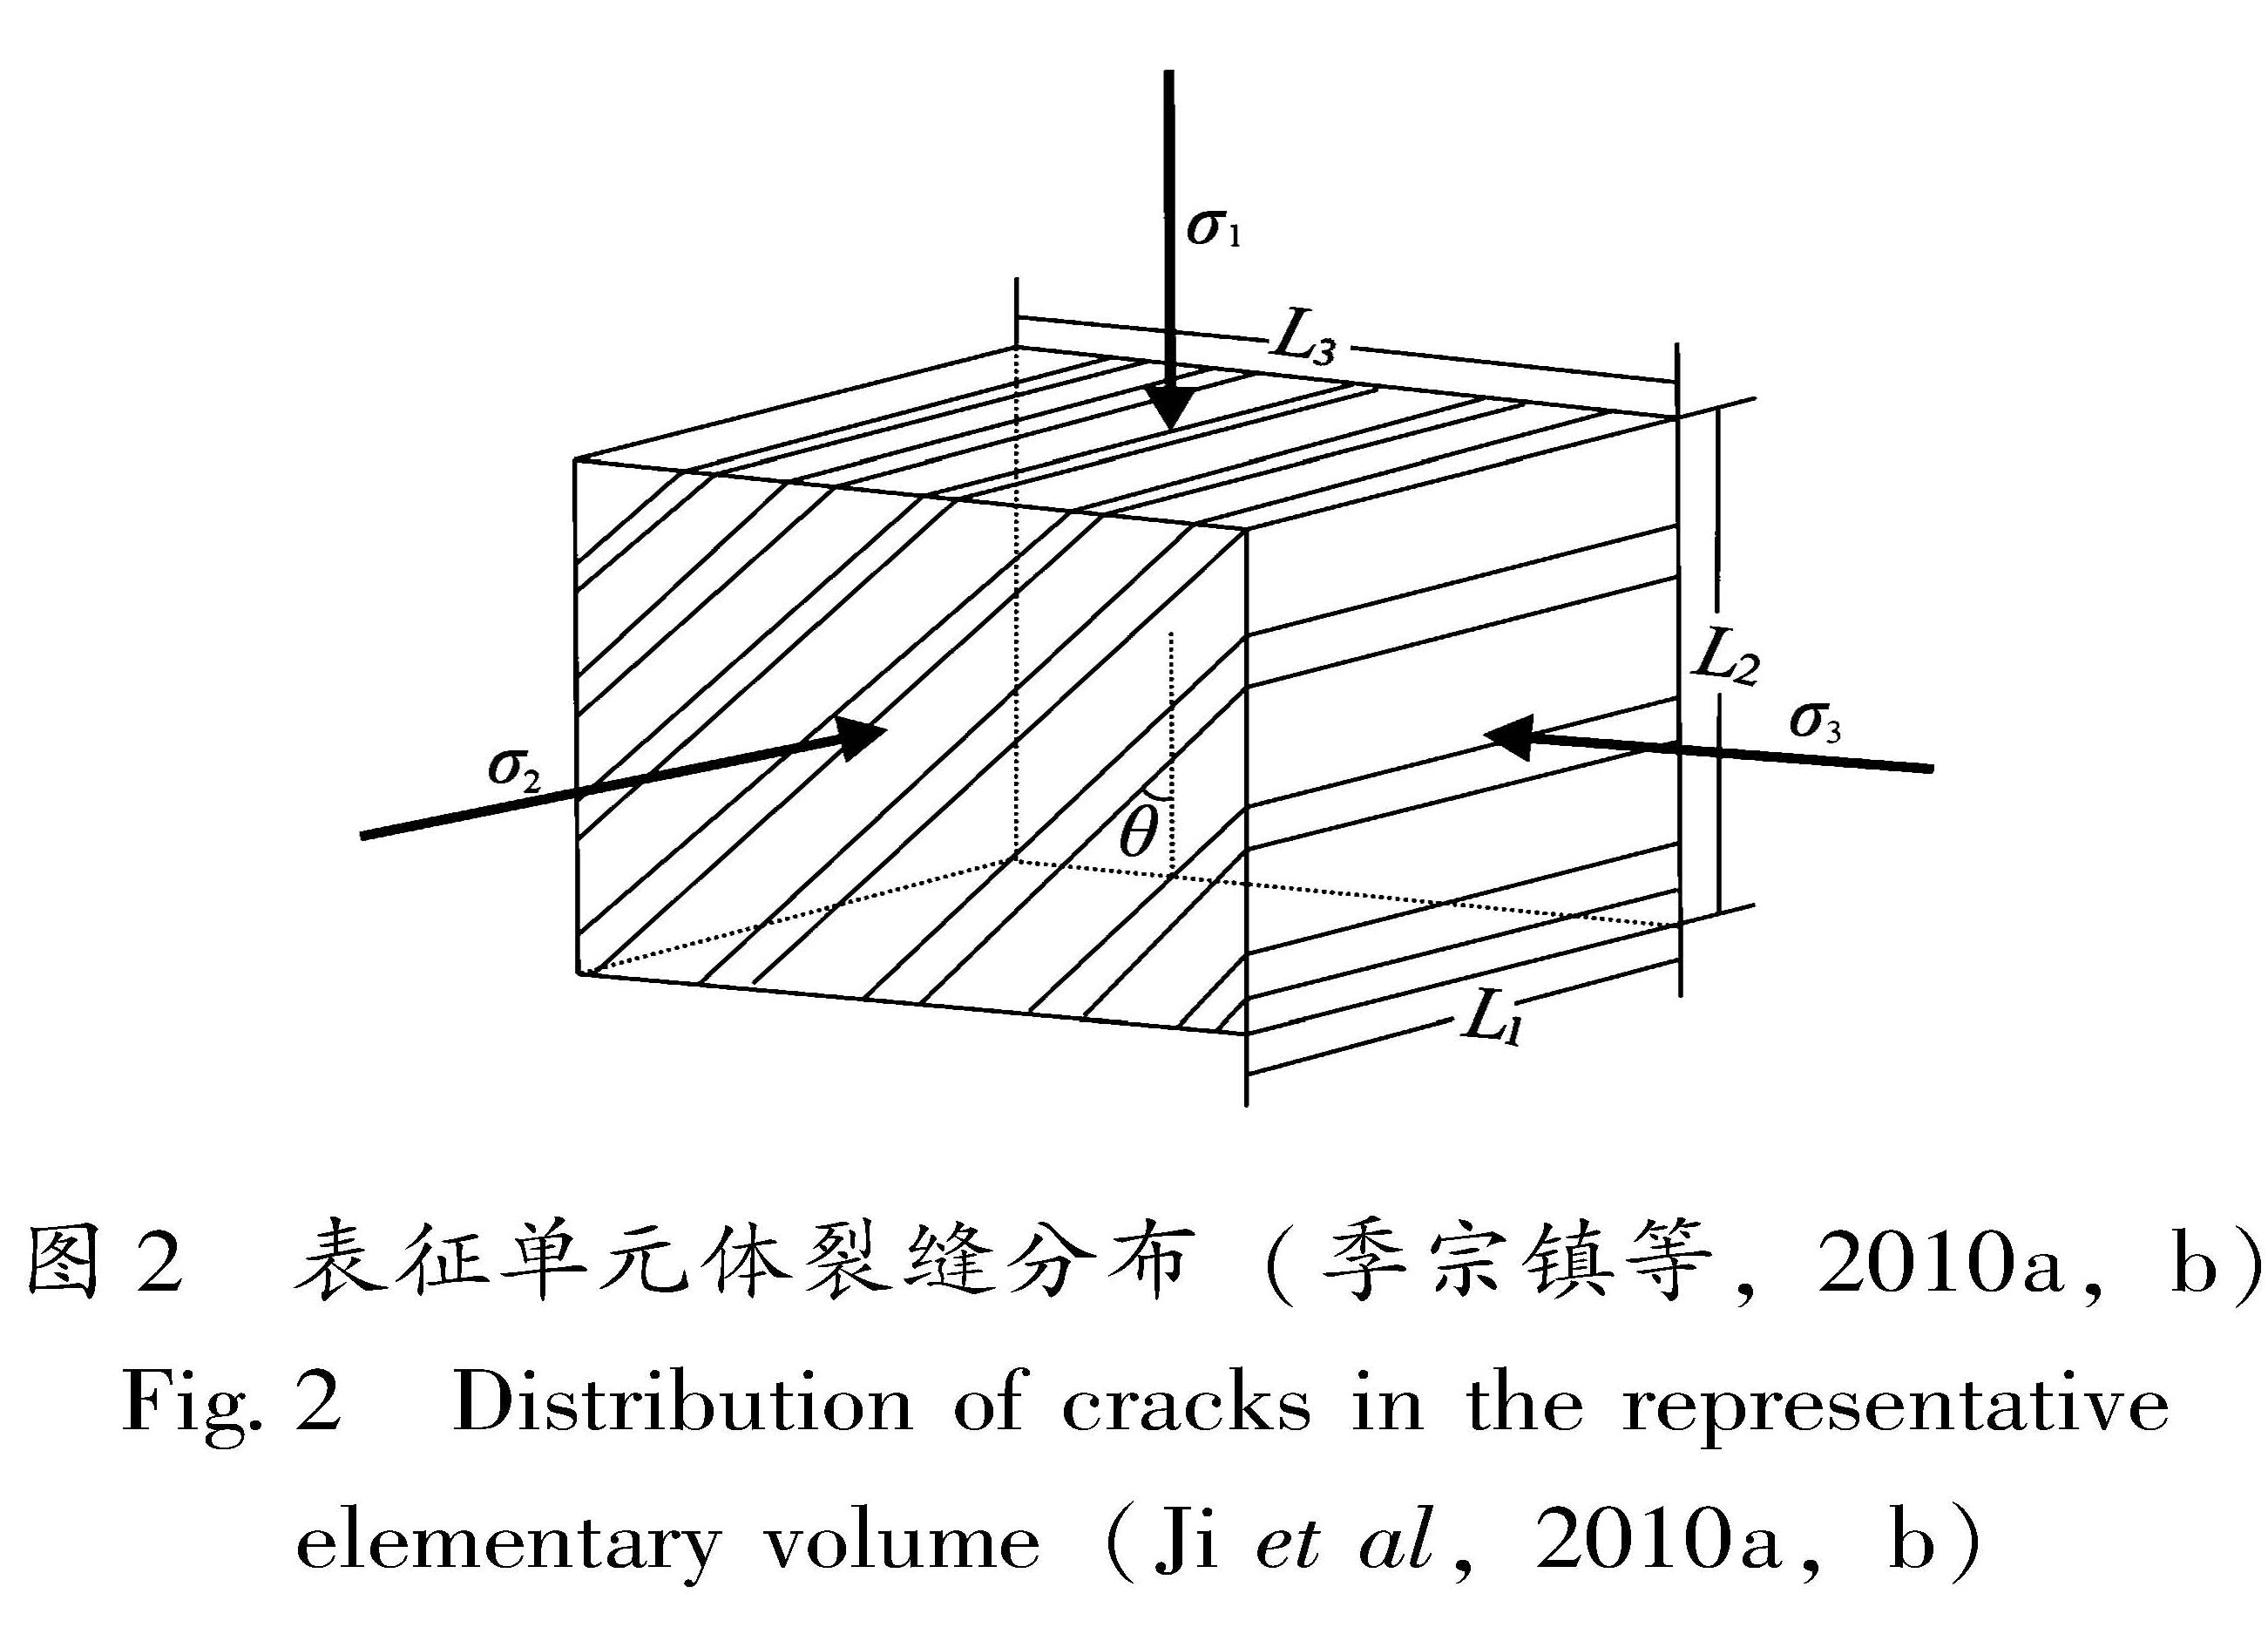 图2 表征单元体裂缝分布(季宗镇等,2010a,b)<br/>Fig.2 Distribution of cracks in the representative elementary volume(Ji et al,2010a,b)